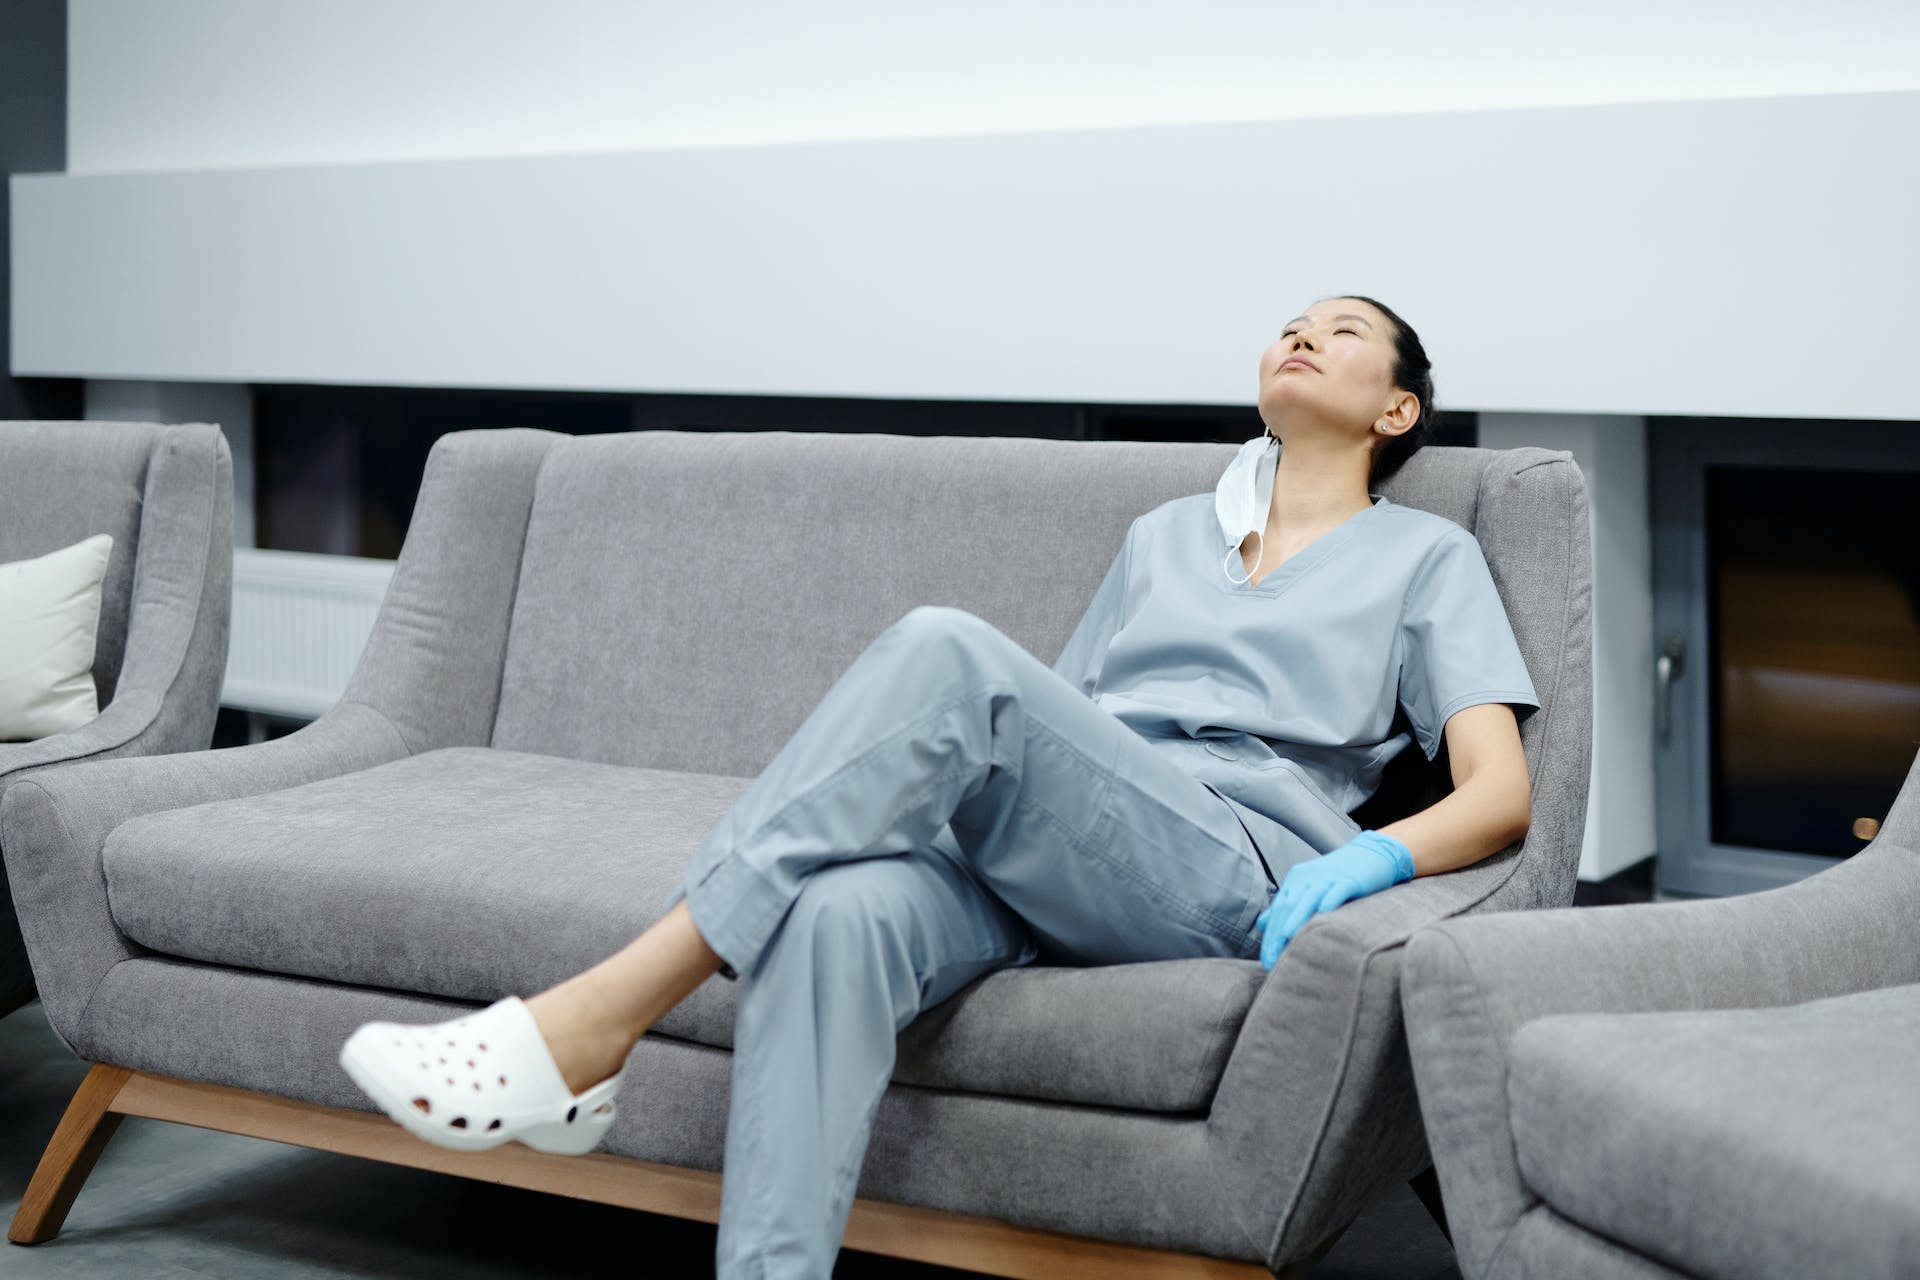 Una mujer cansada sentada en un sofá | Fuente: Pexels